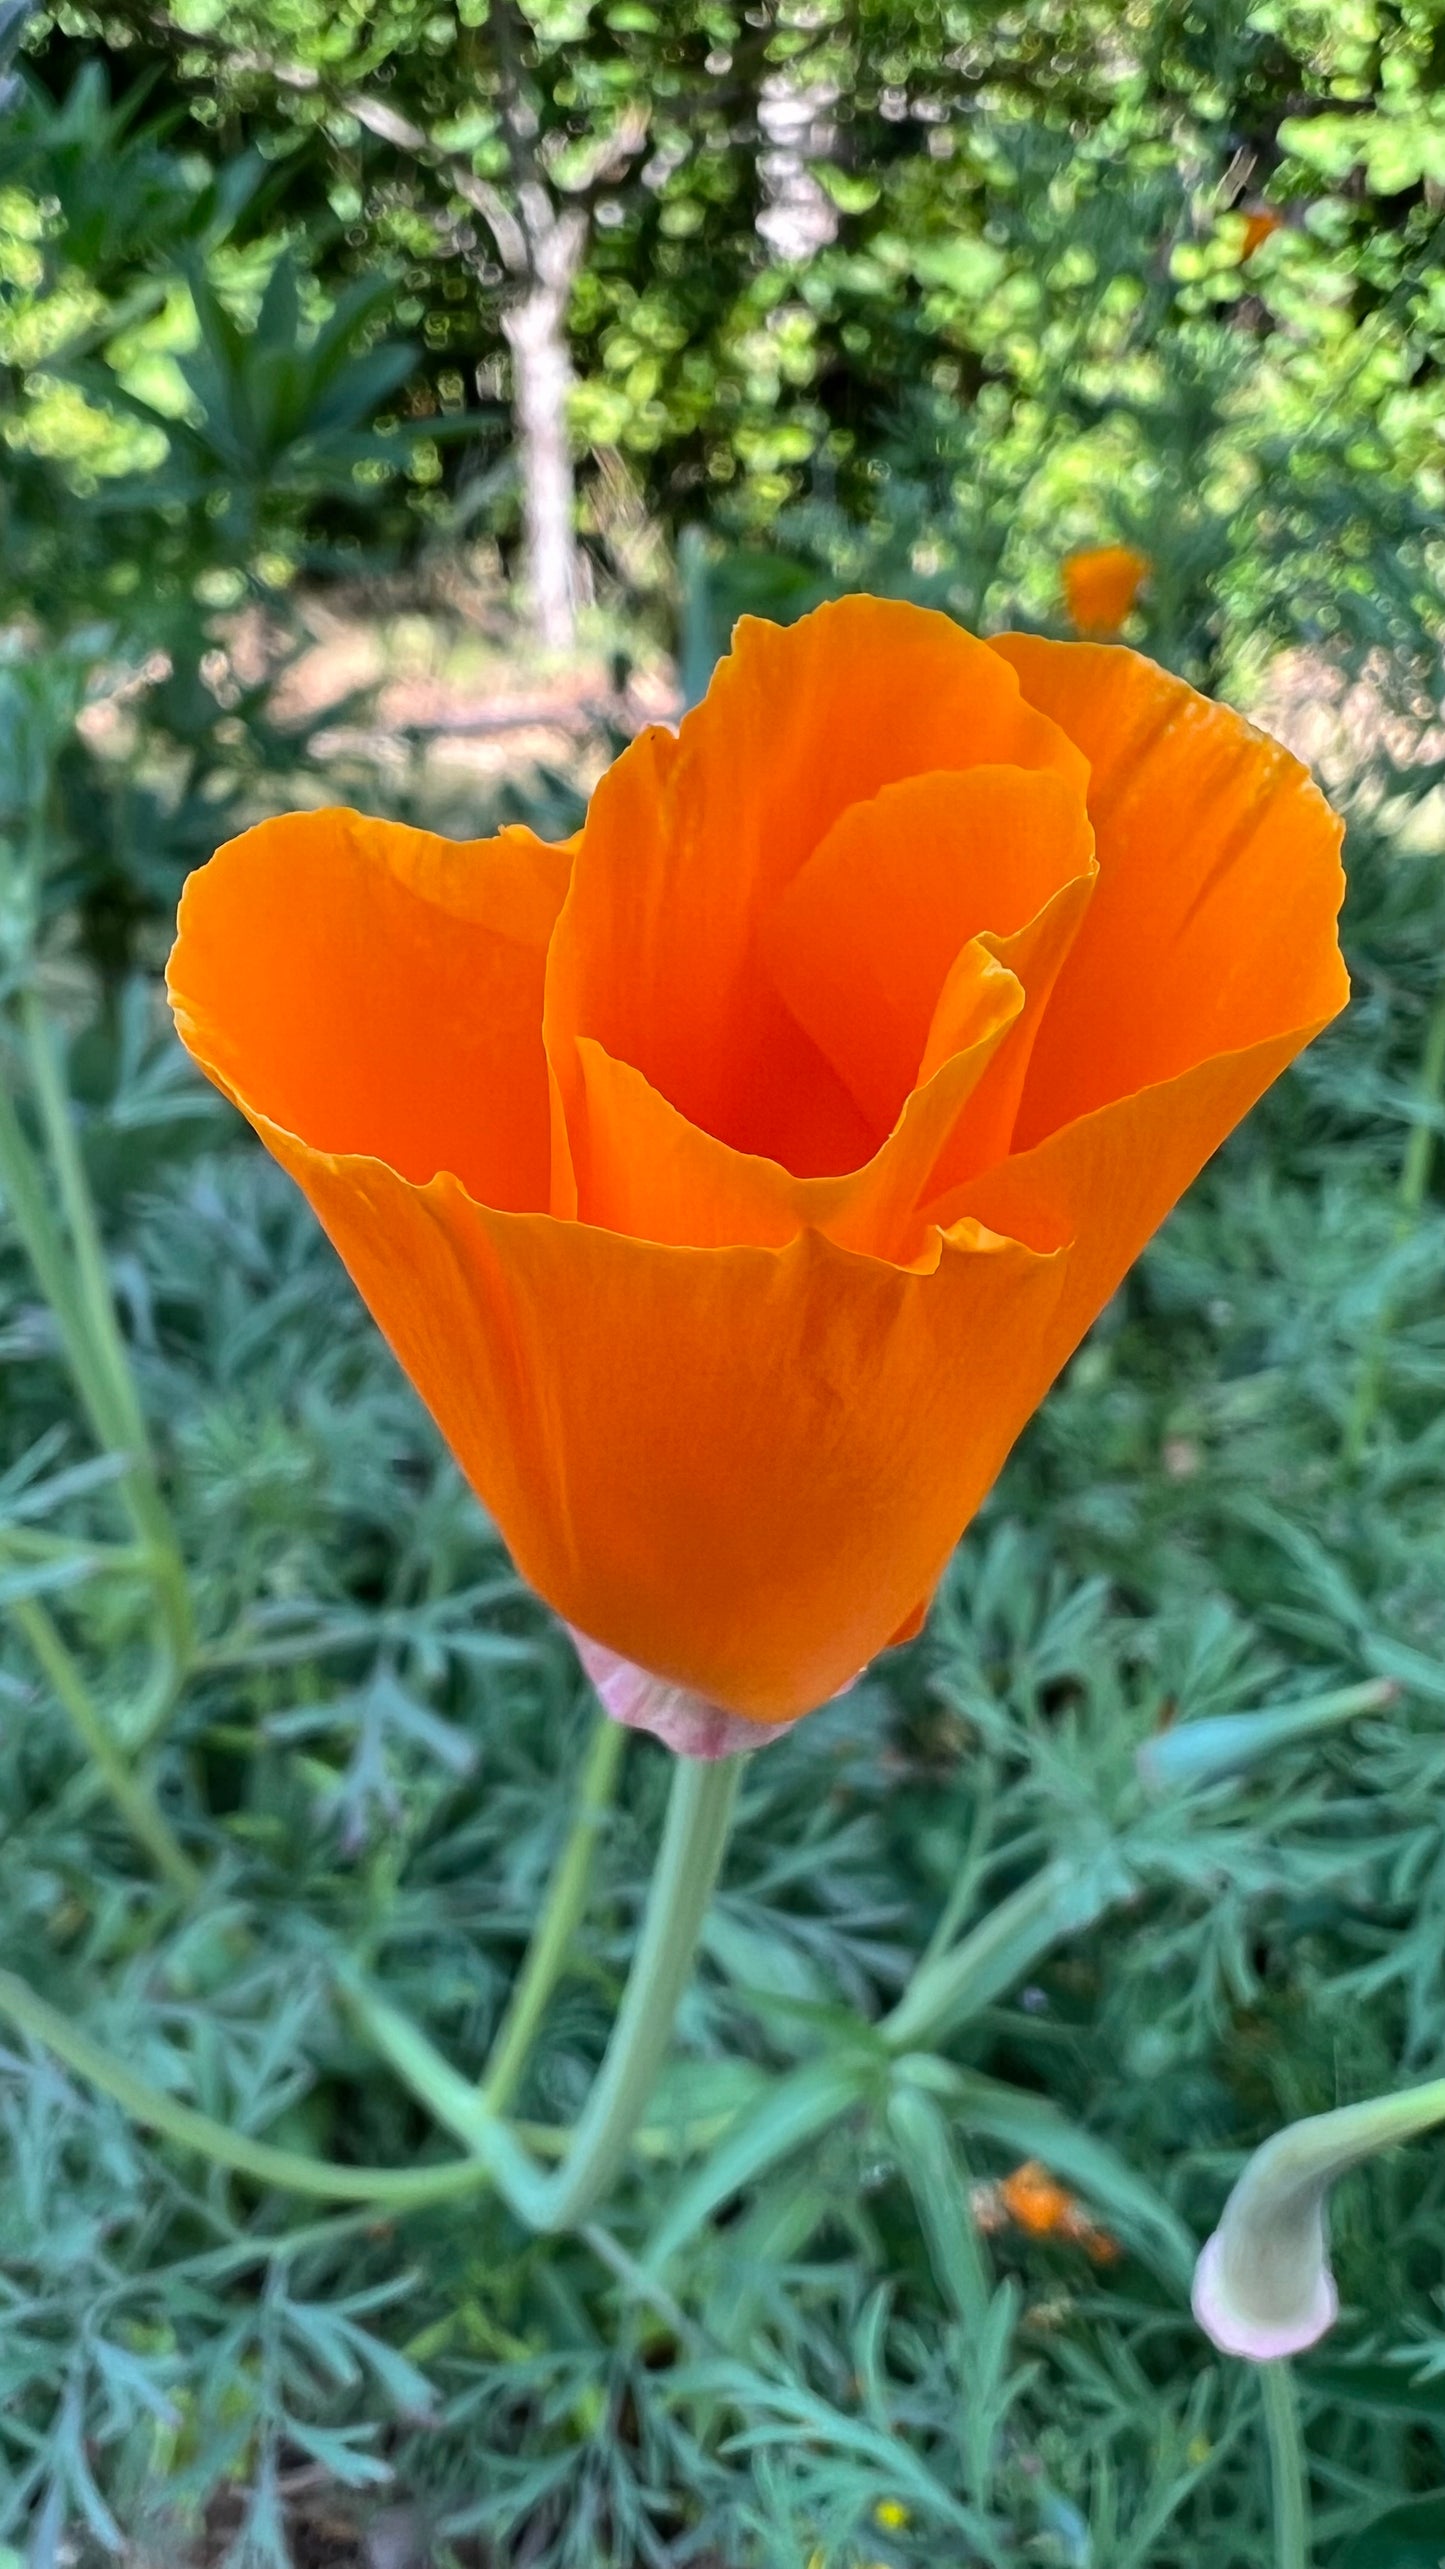 California Poppy seed sampler